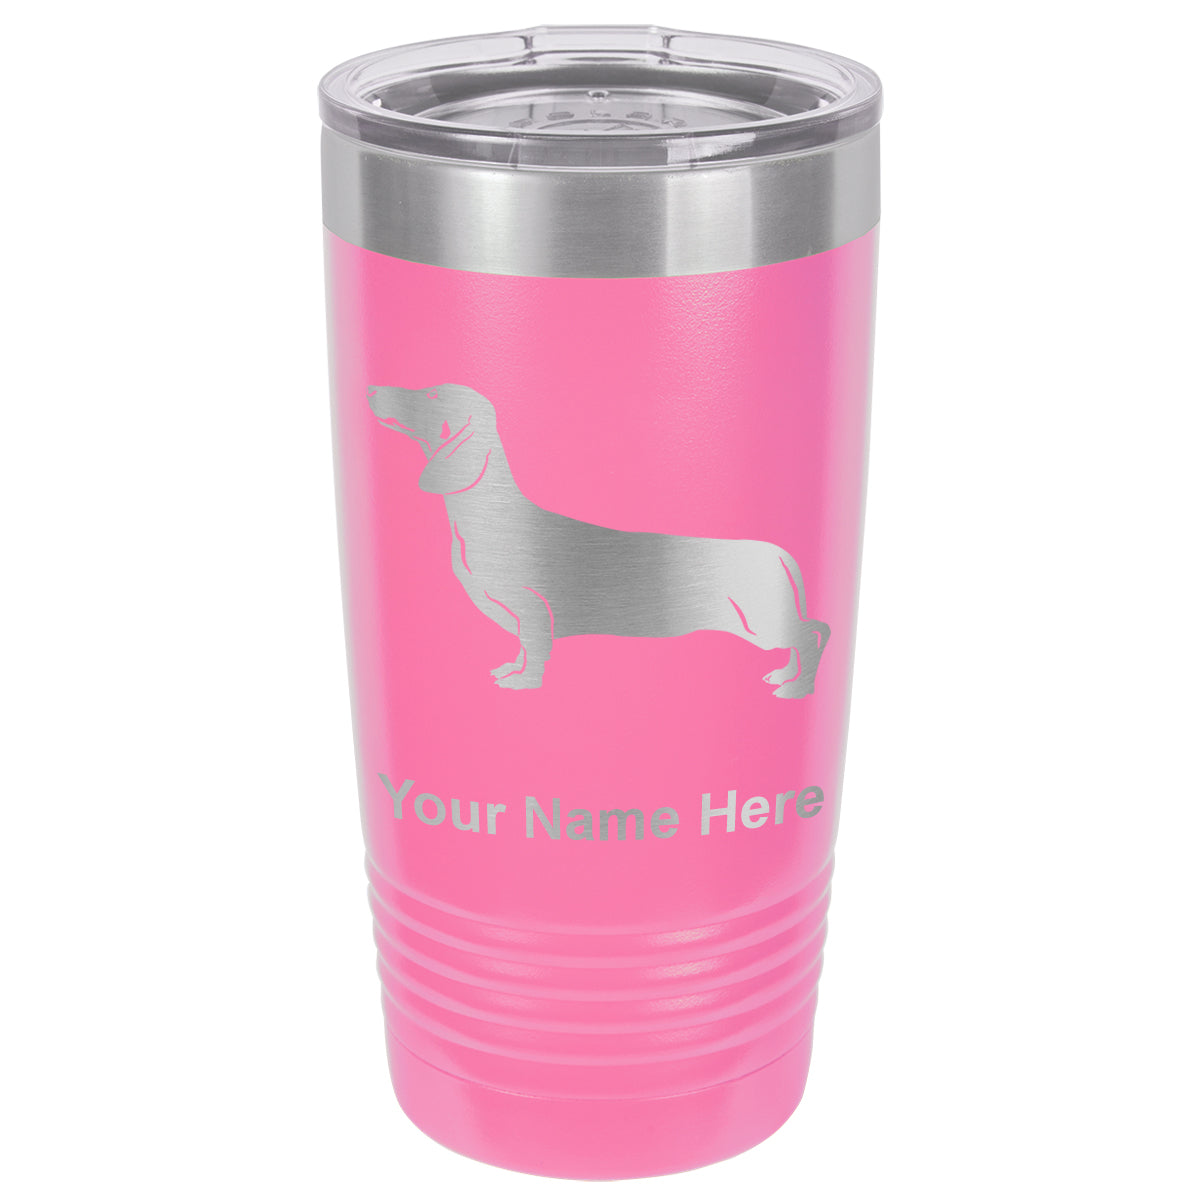 20oz Vacuum Insulated Tumbler Mug, Dachshund Dog, Personalized Engraving Included